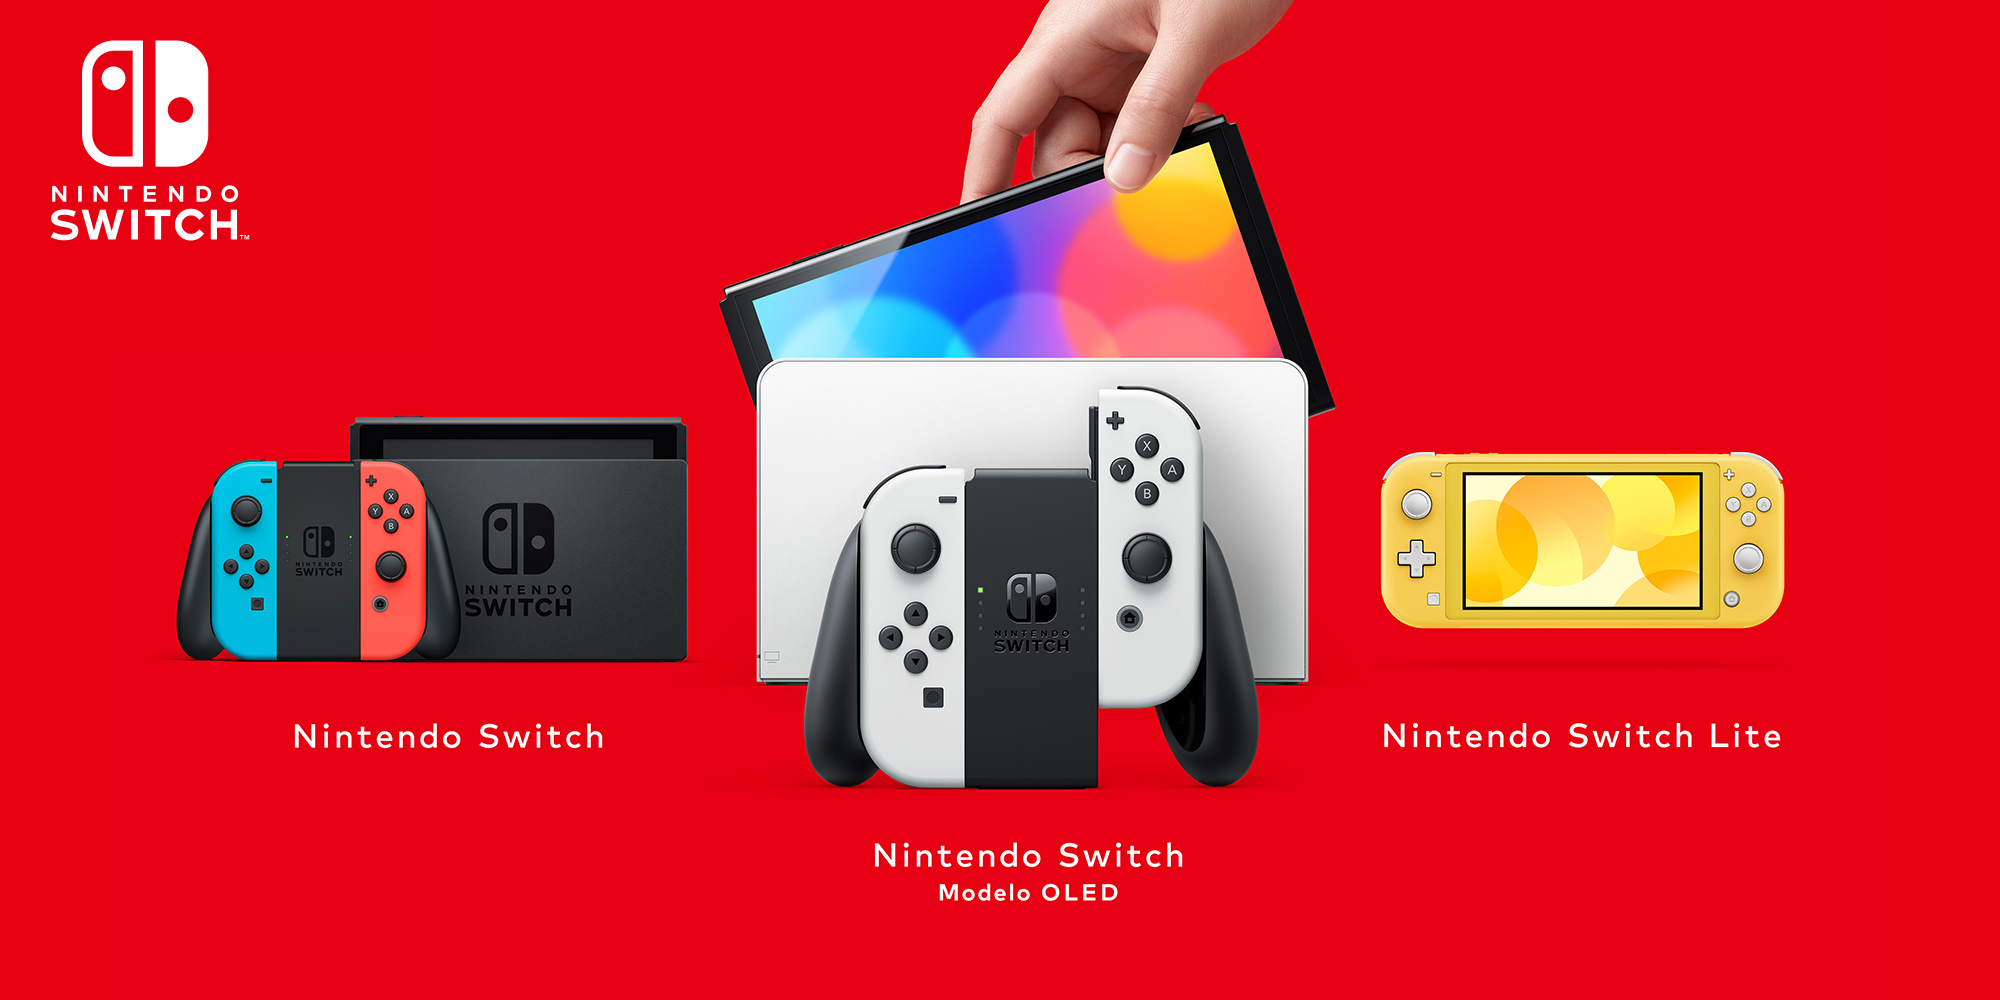 Acabas de receber ou comprar uma Nintendo Switch? Descobre tudo sobre a tua nova consola!